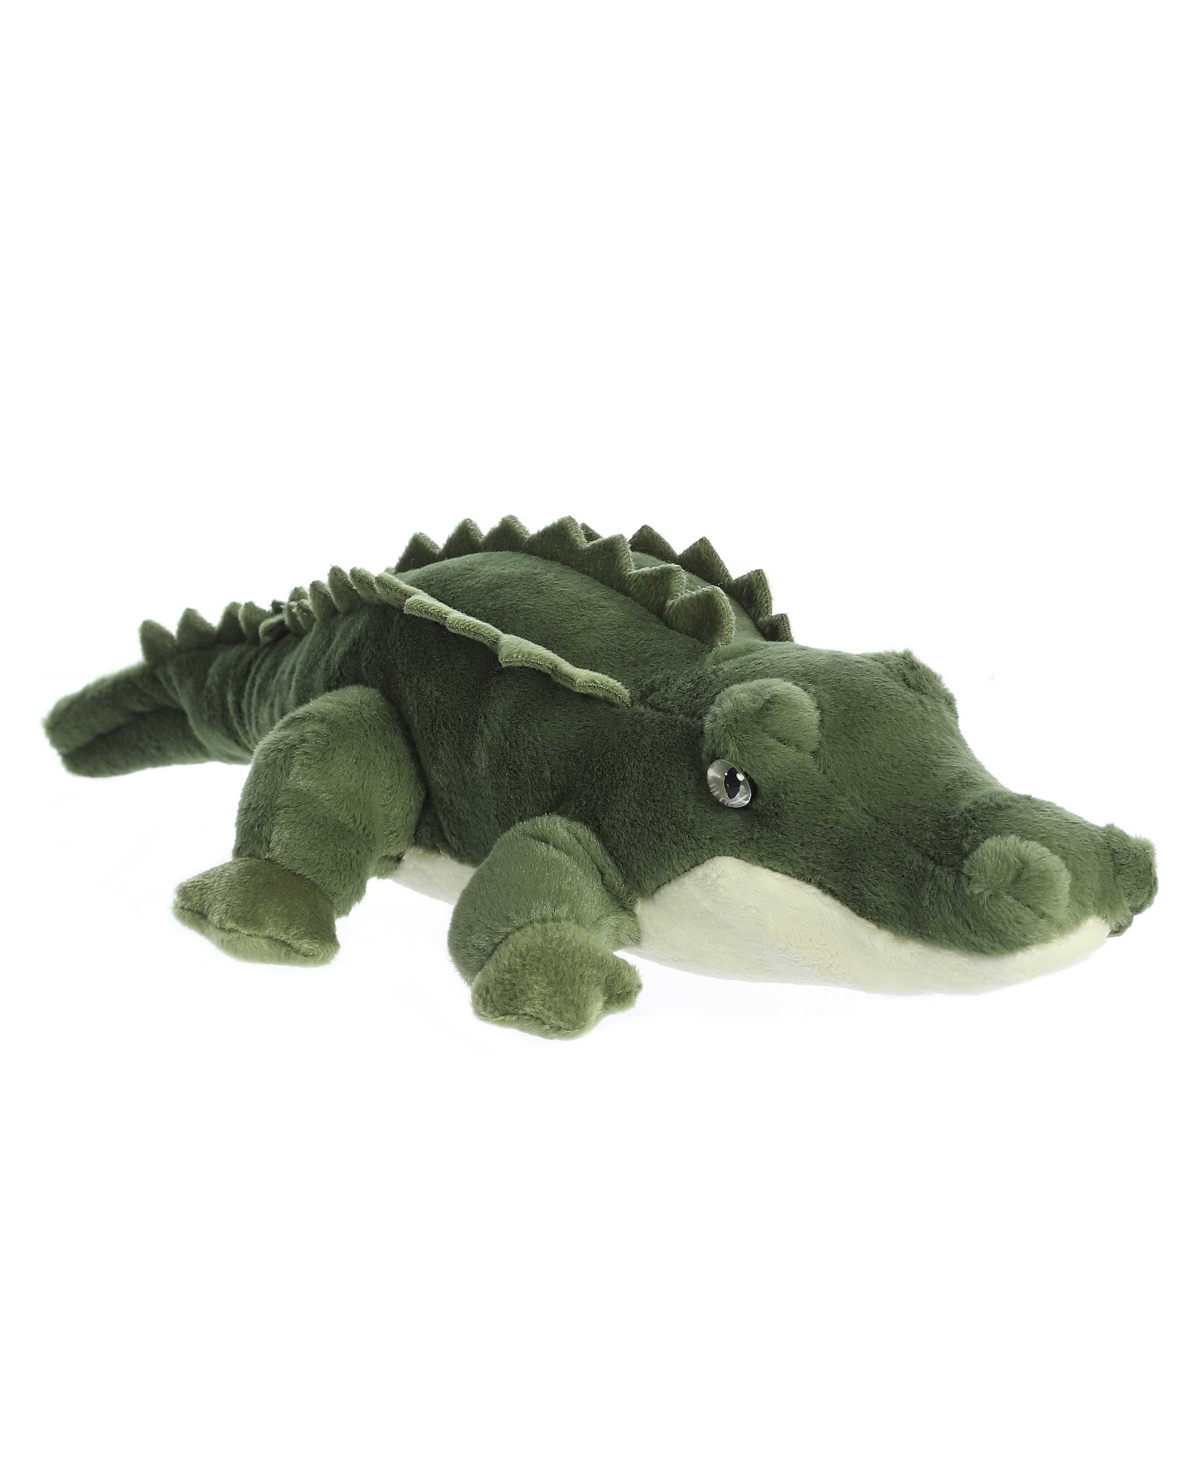 Aurora Kids' Medium Swampy Flopsie Adorable Plush Toy Green 12"